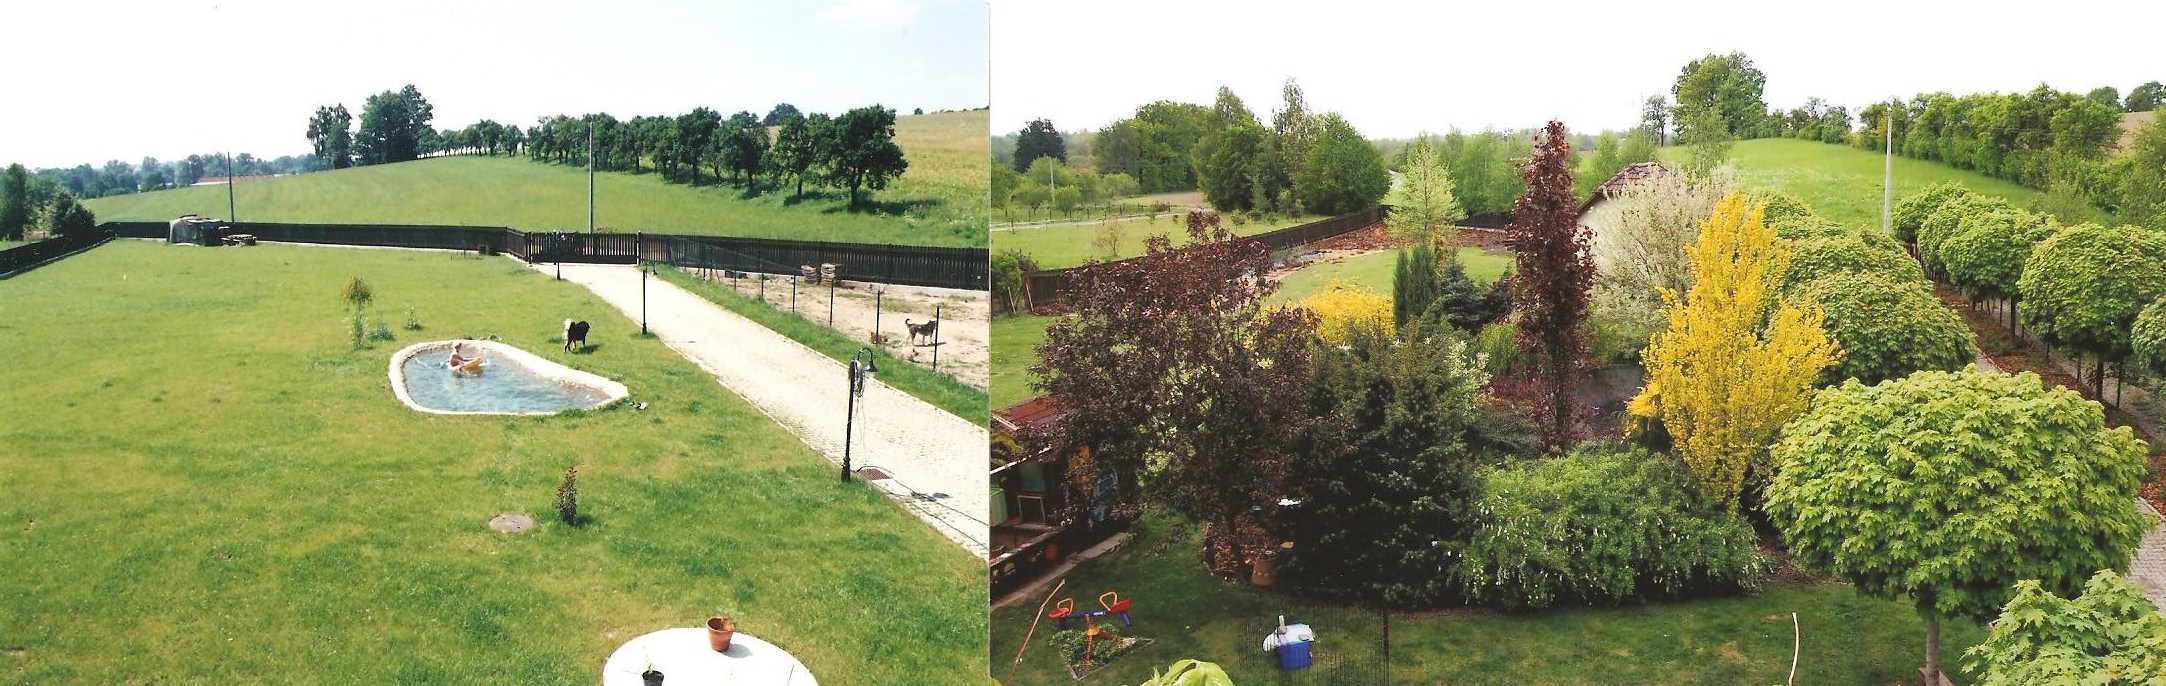 zahrada a její vývoj po šesti letech